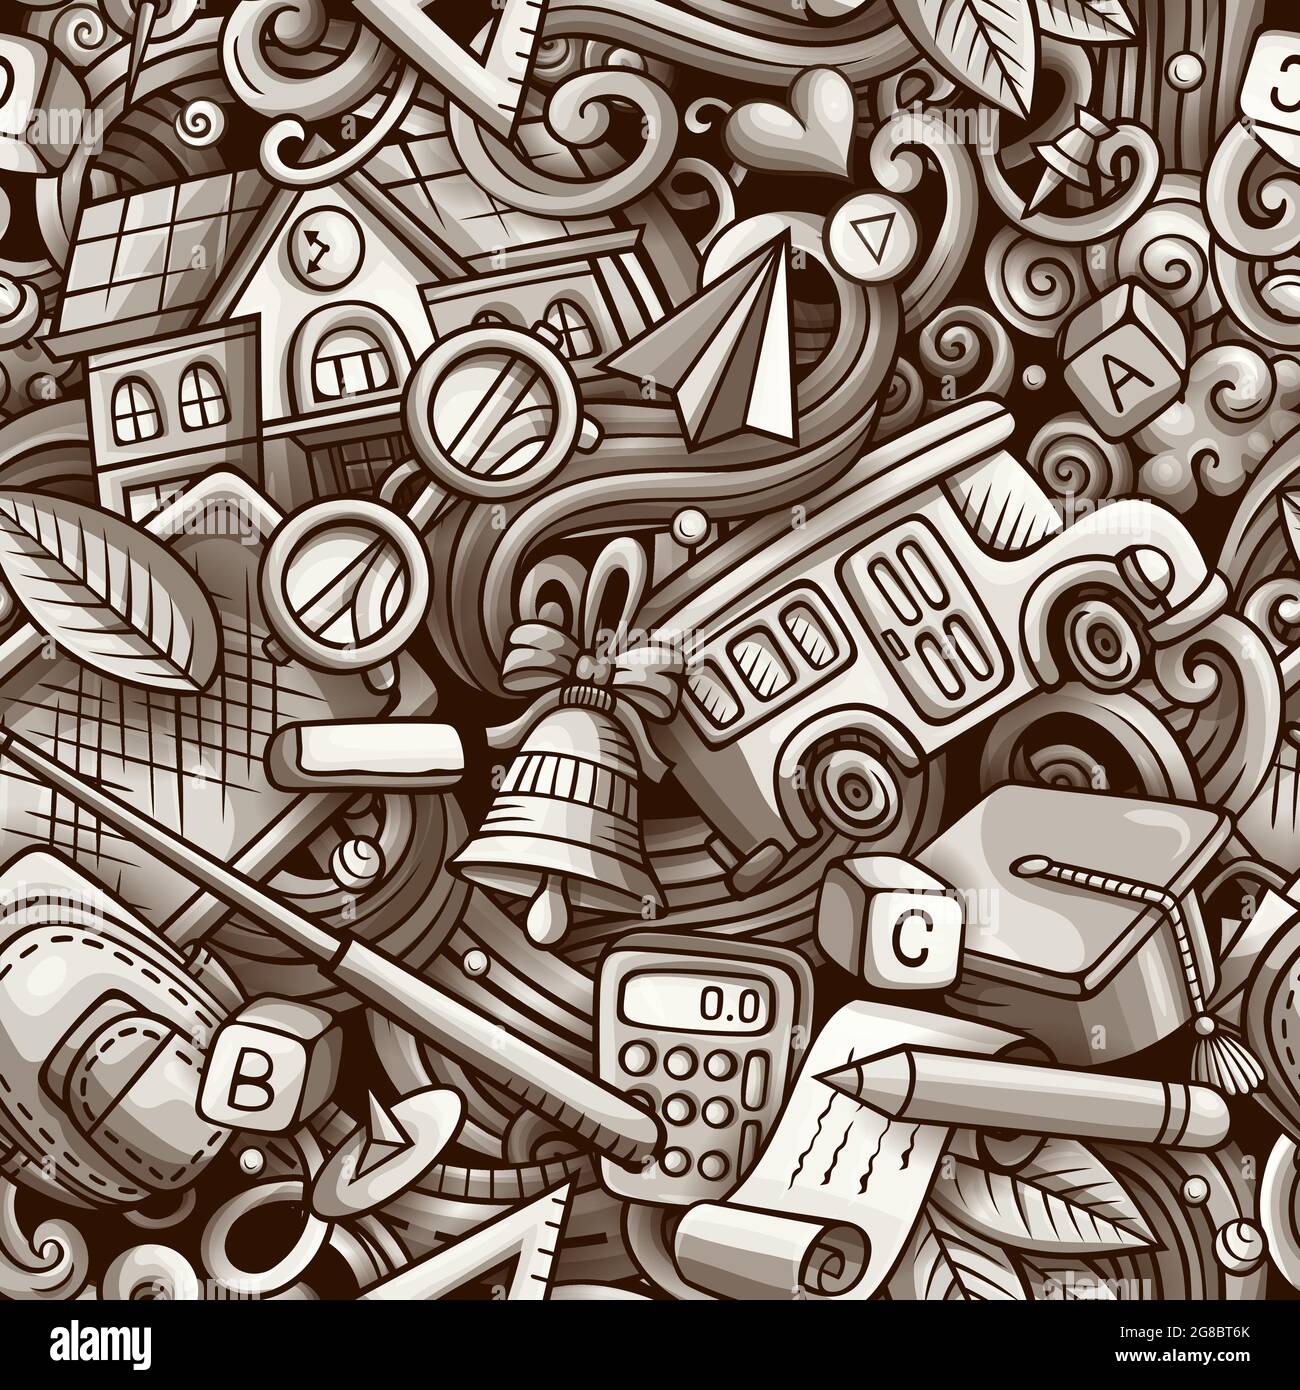 Cartoon niedliche Kritzeleien Hand gezeichnet Schule nahtlose Muster. Monochrom detailliert, mit vielen Objekten Hintergrund. Endlose lustige Vektor-Illustration. Alle Stock Vektor